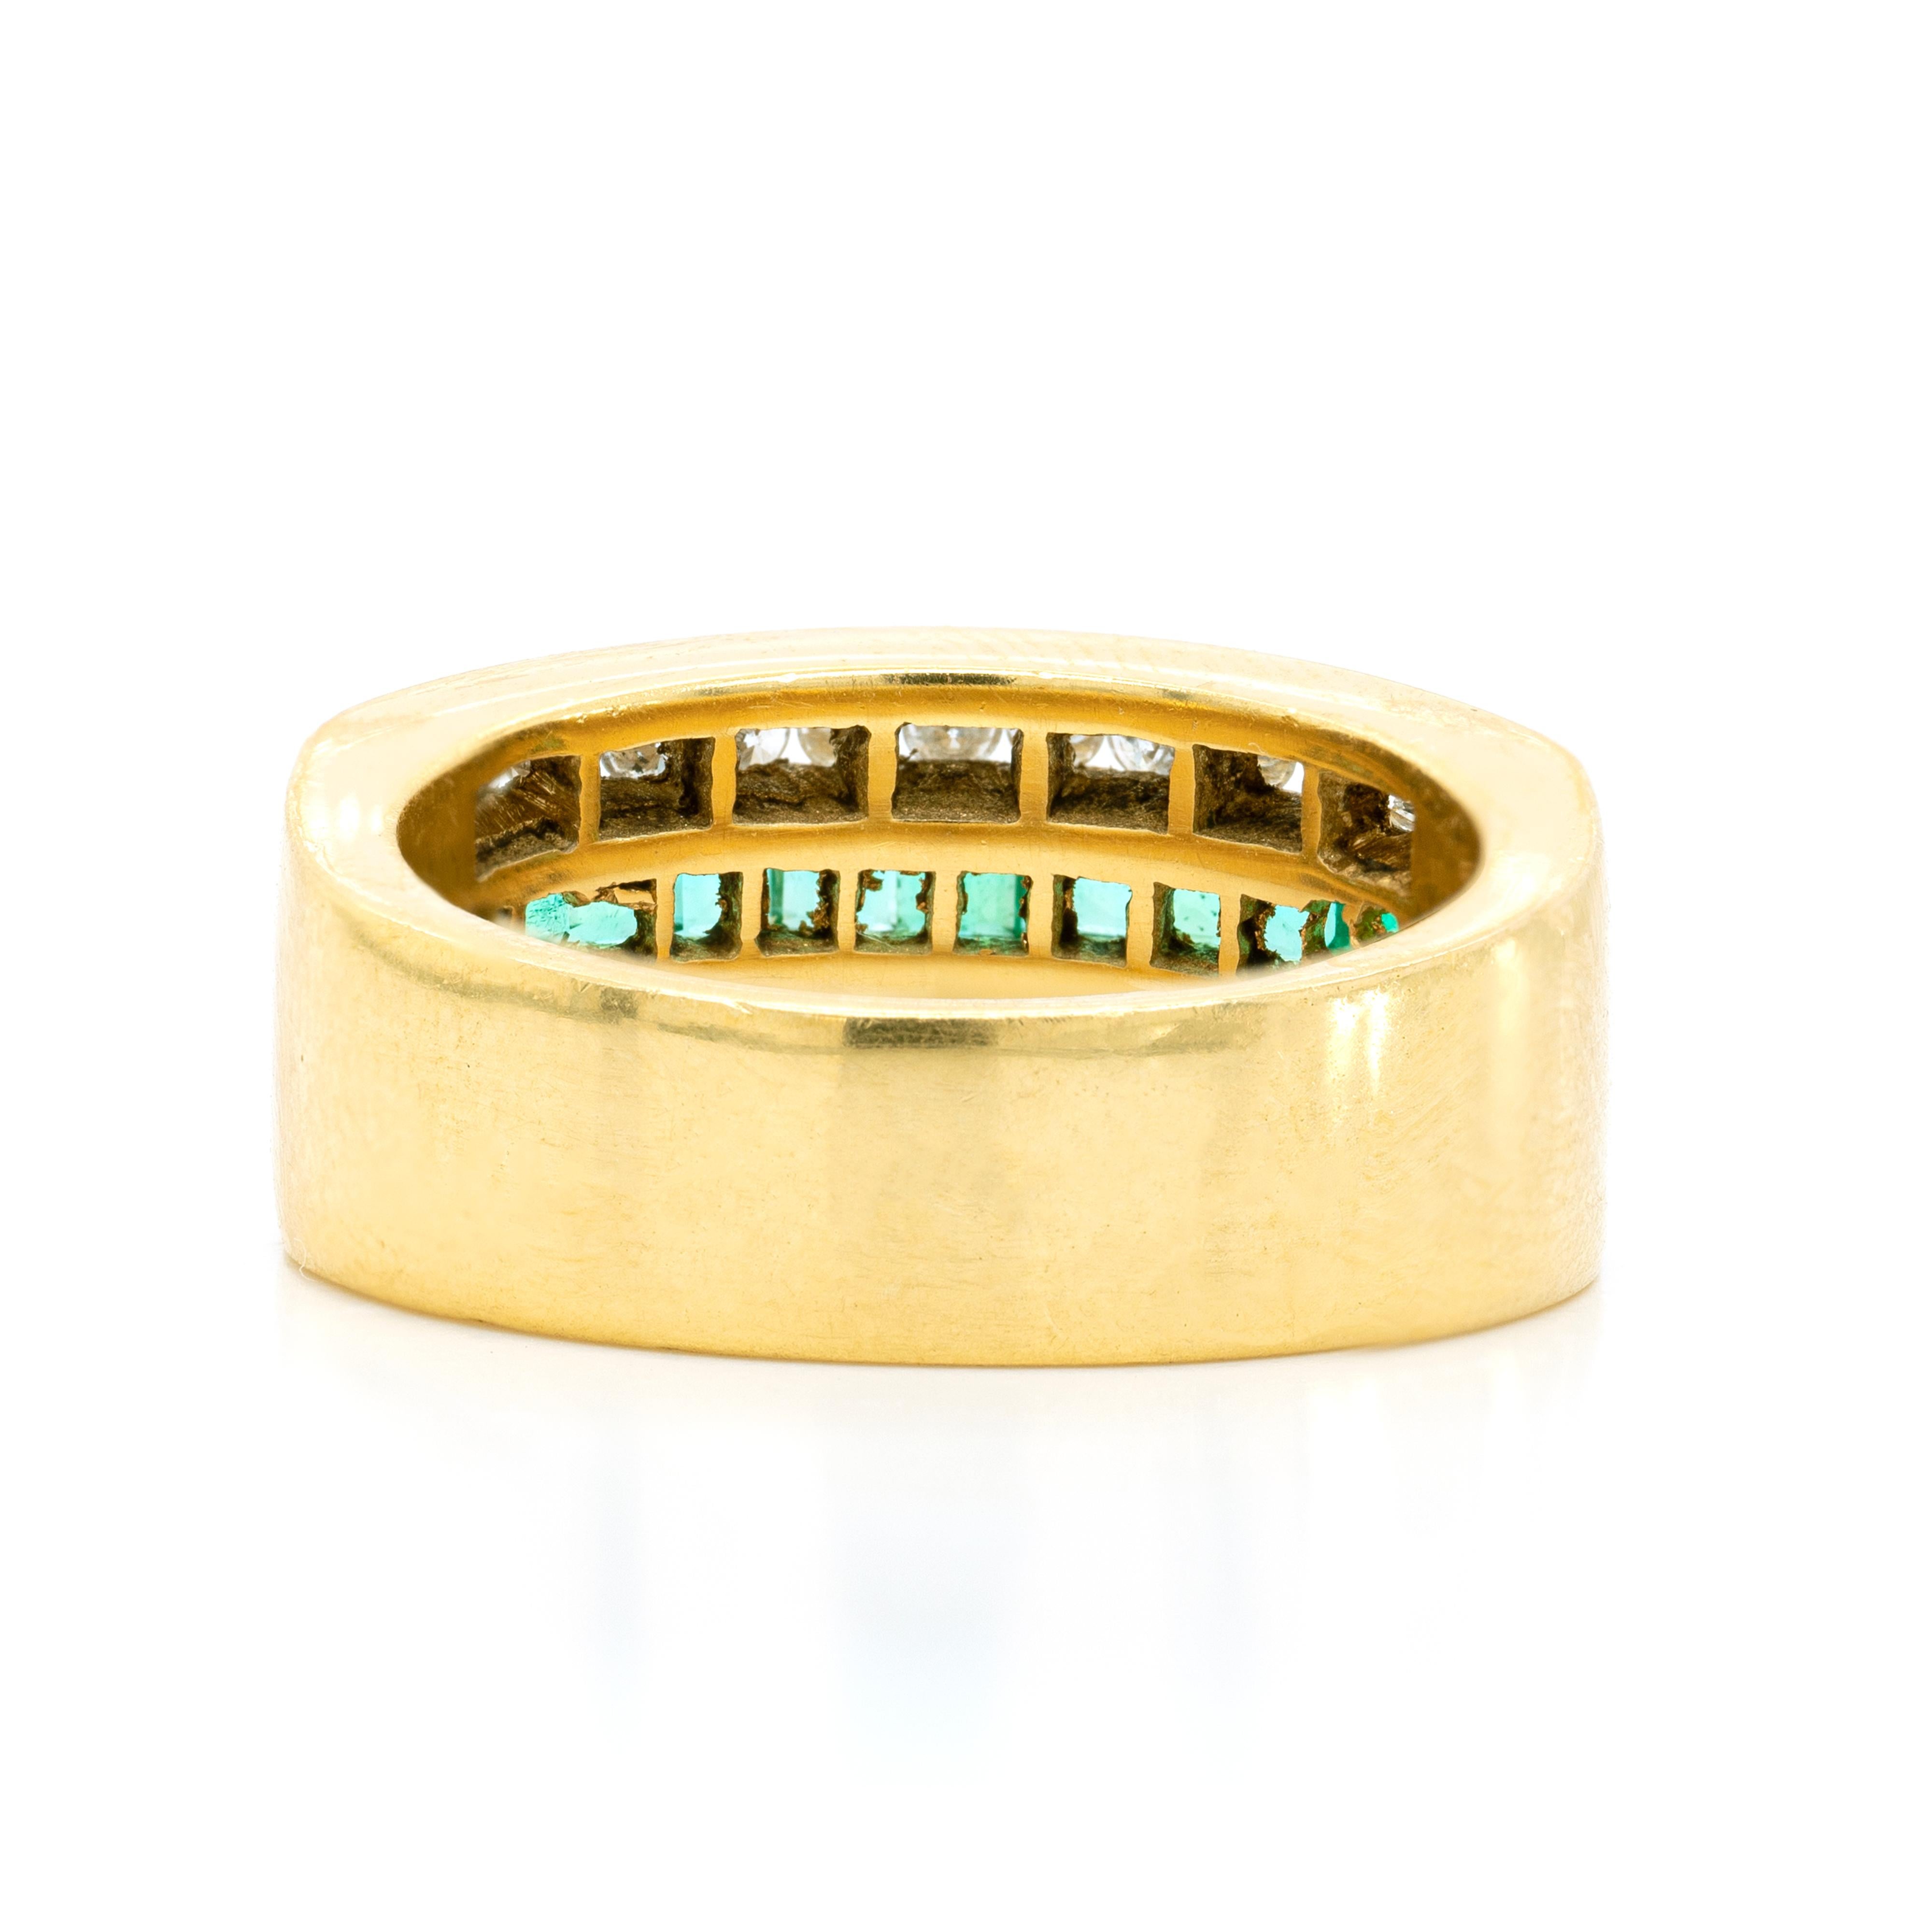 Dieser Ring aus 18 Karat Gelbgold ist in der Mitte mit einer Reihe von elf quadratisch geschliffenen Smaragden mit einem ungefähren Gesamtgewicht von 0,70 ct eingelegt. Die leuchtenden Smaragde werden auf beiden Seiten von einer Reihe von dreizehn